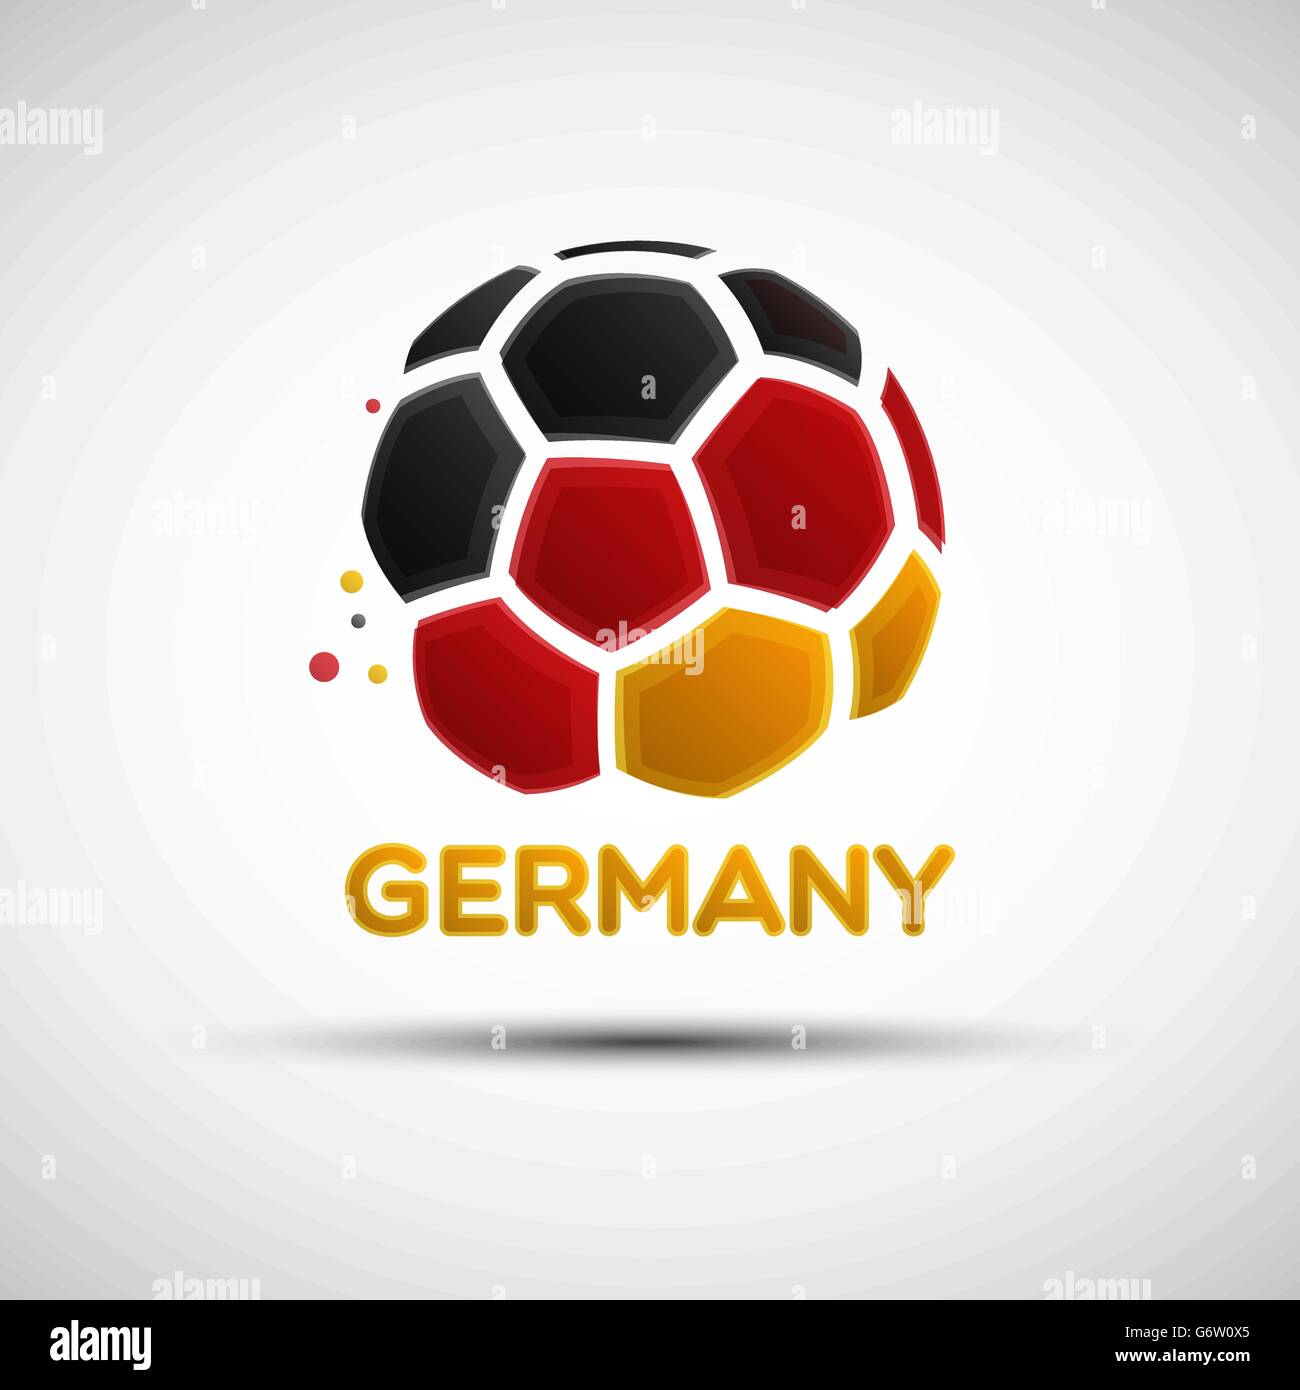 Campionato di calcio banner. Bandiera della Germania. Illustrazione Vettoriale astratto del pallone da calcio tedesco con bandiera nazionale Illustrazione Vettoriale